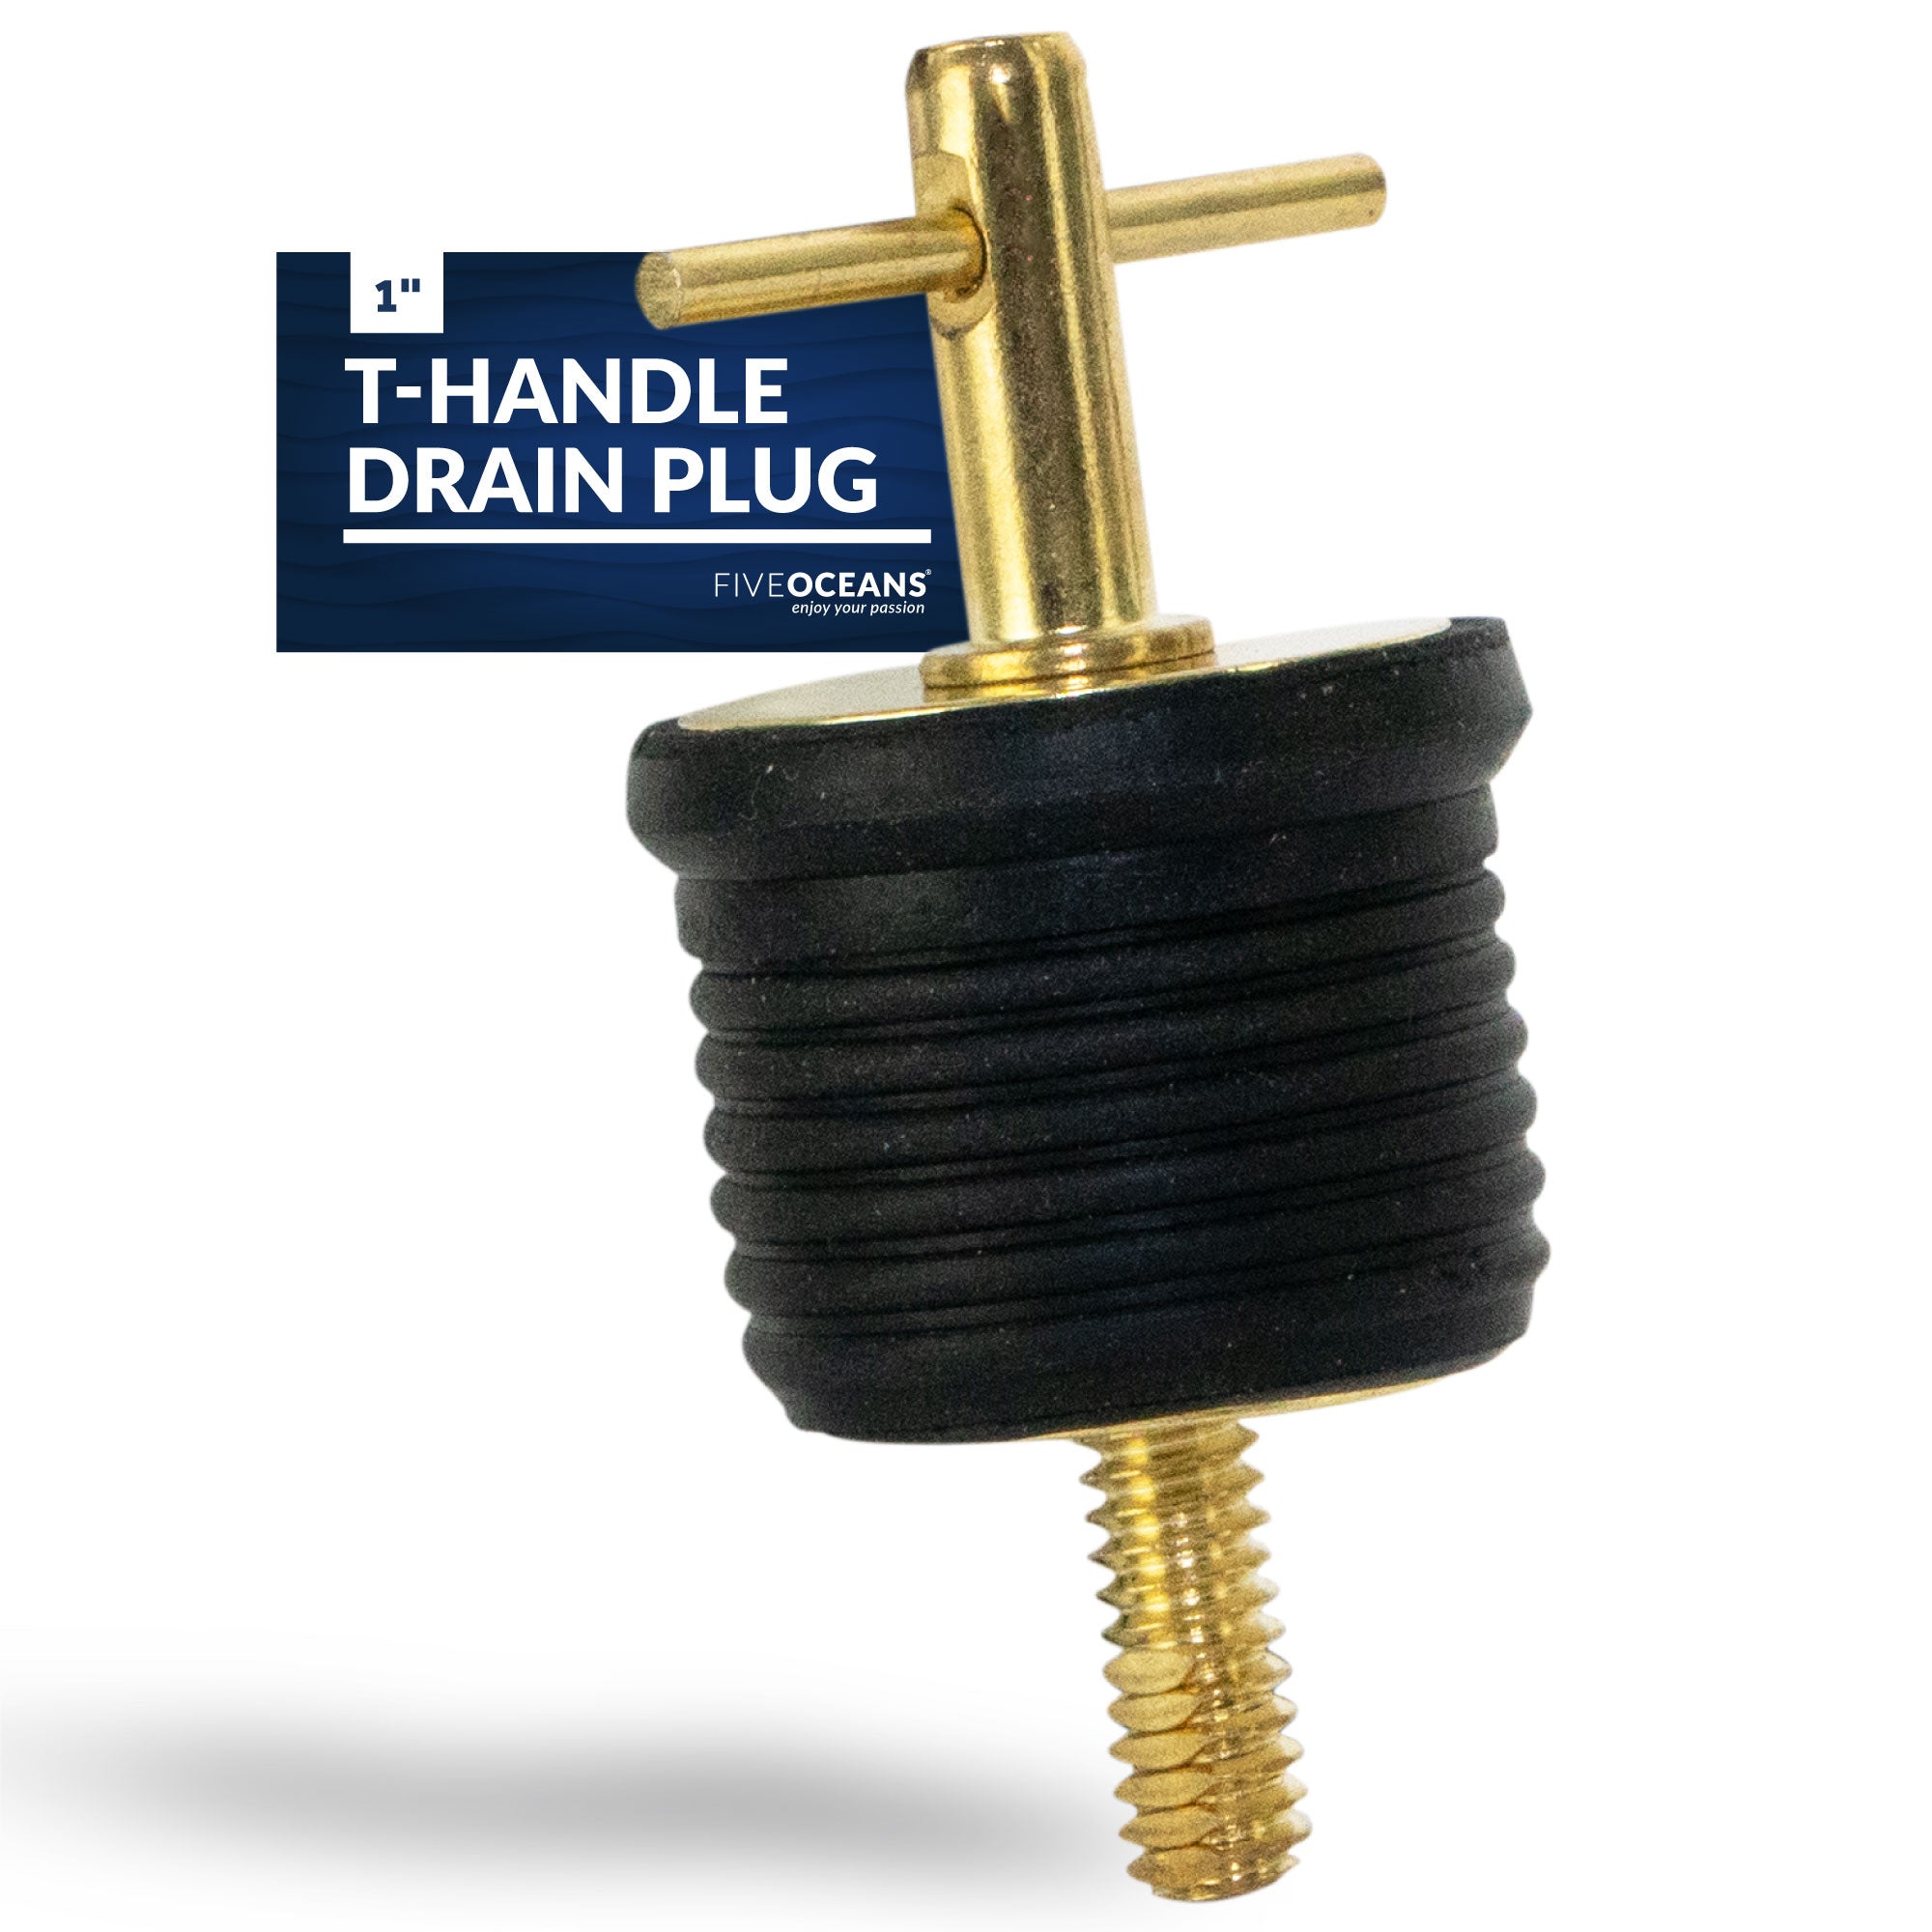 T-Handle Drain Plug for 1" Diameter Drains - FO2882